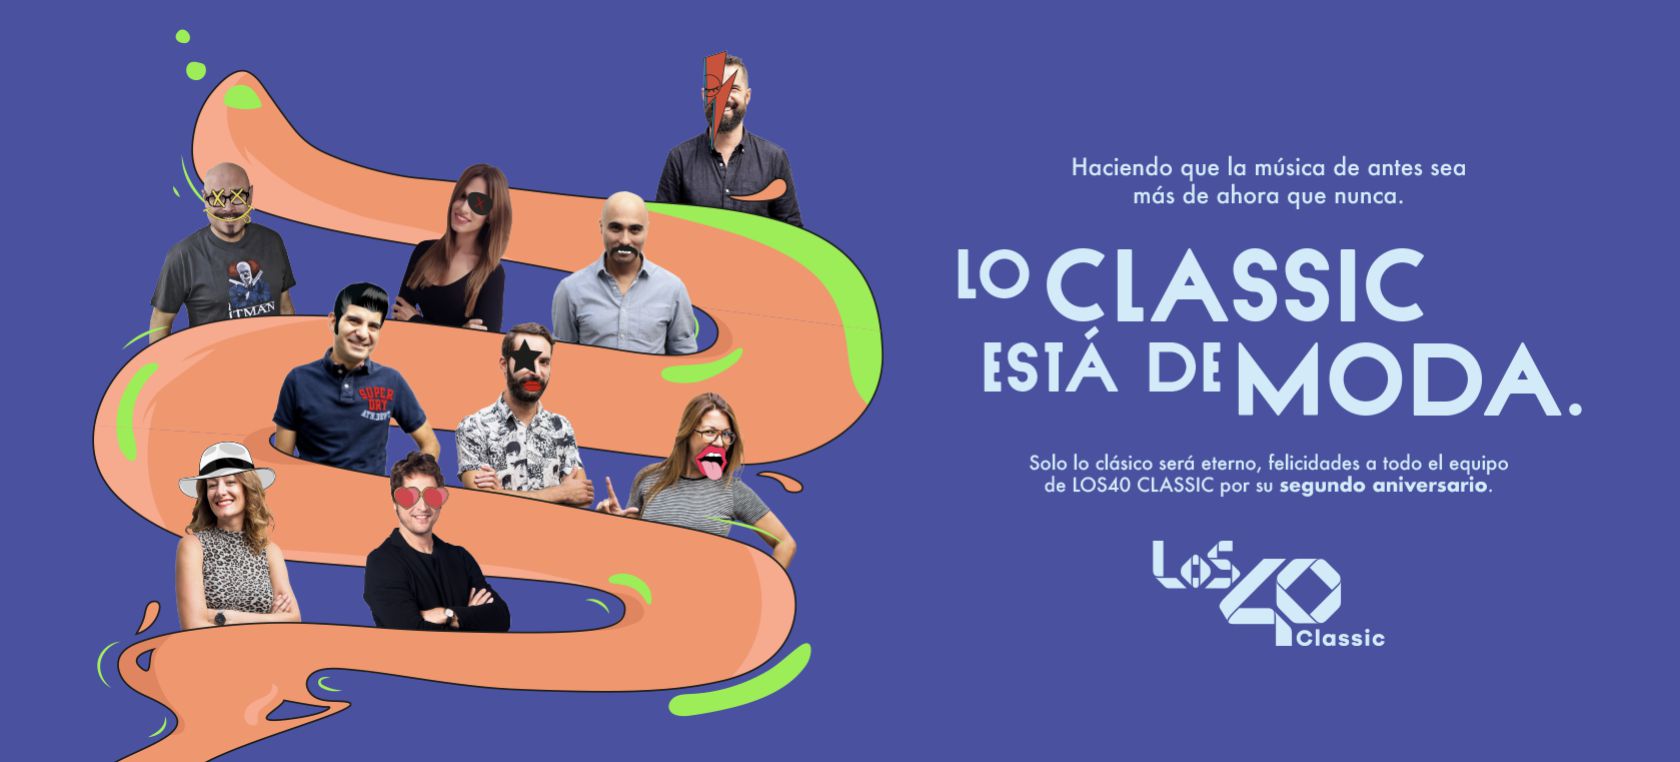 LOS40 Classic cierra su segundo aniversario con 462.000 oyentes